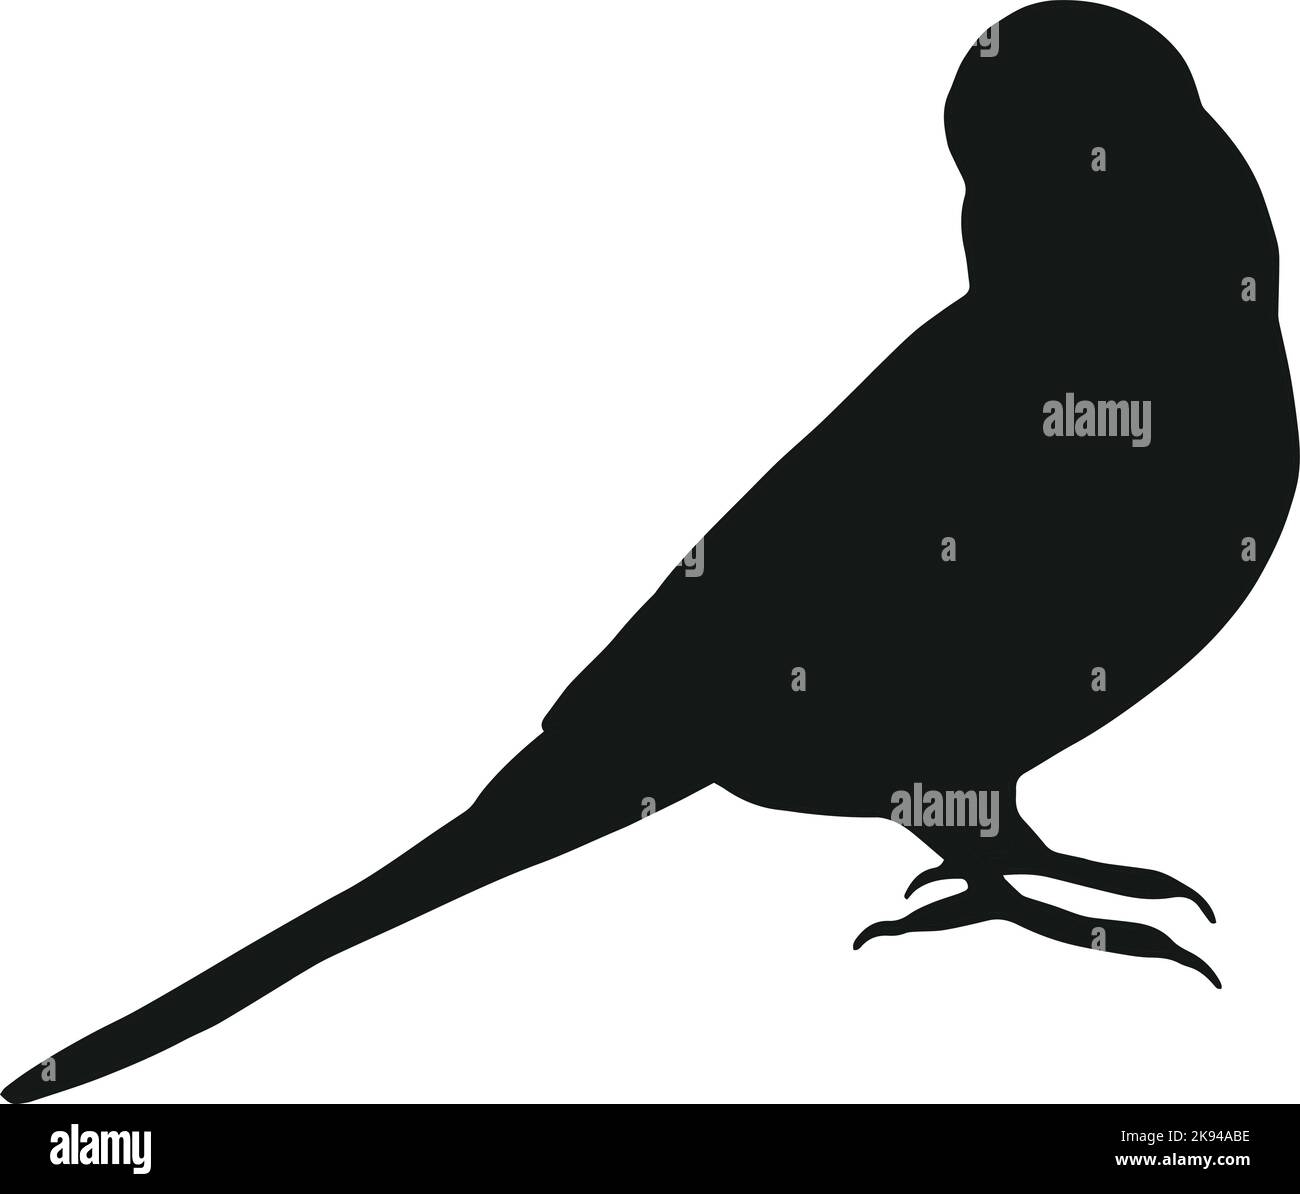 Budgie Silhouette isoliert auf weißem Hintergrund. Schwarz handgezeichnete Vektorgrafik eines Tiervogels. Einfache Vektordarstellung eines Tieres Stock Vektor